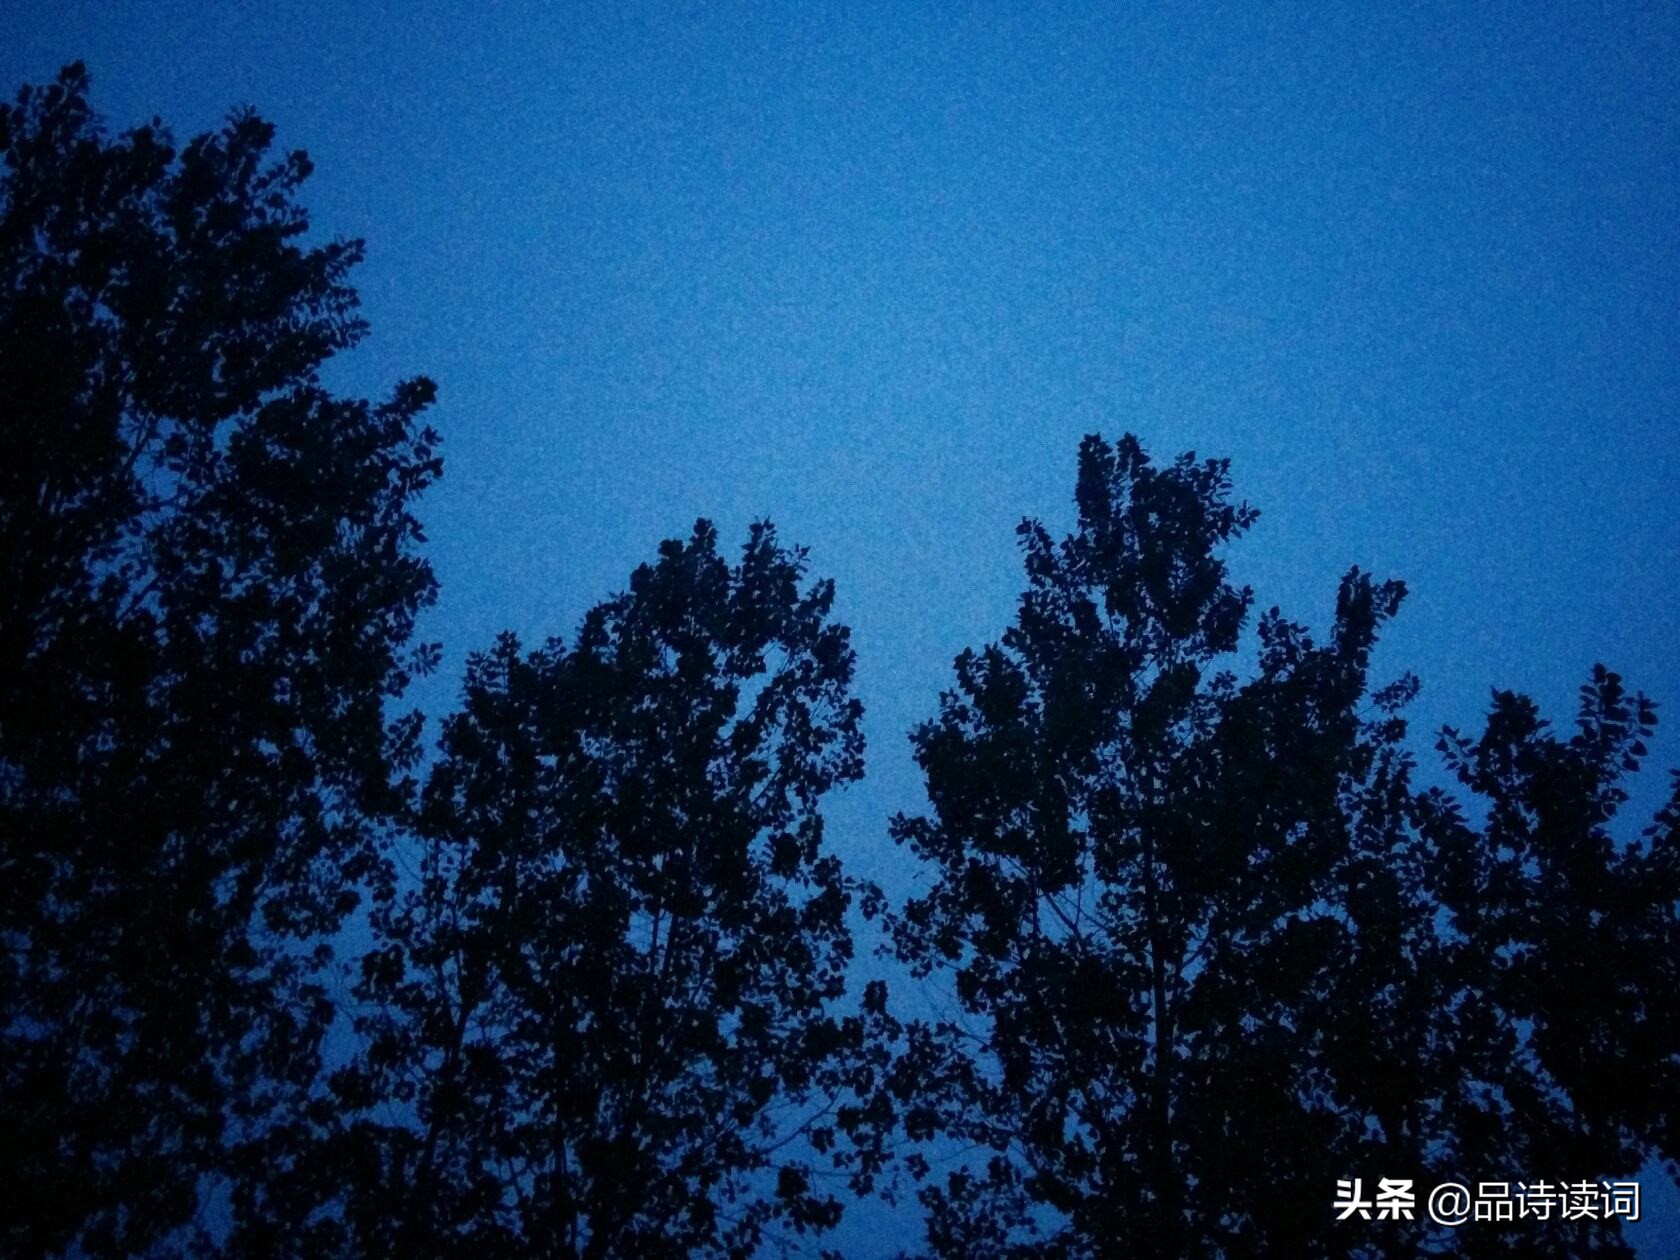 朱熹的这首《秋月》，通篇可谓是如诗如画，成为咏月里的千古名篇